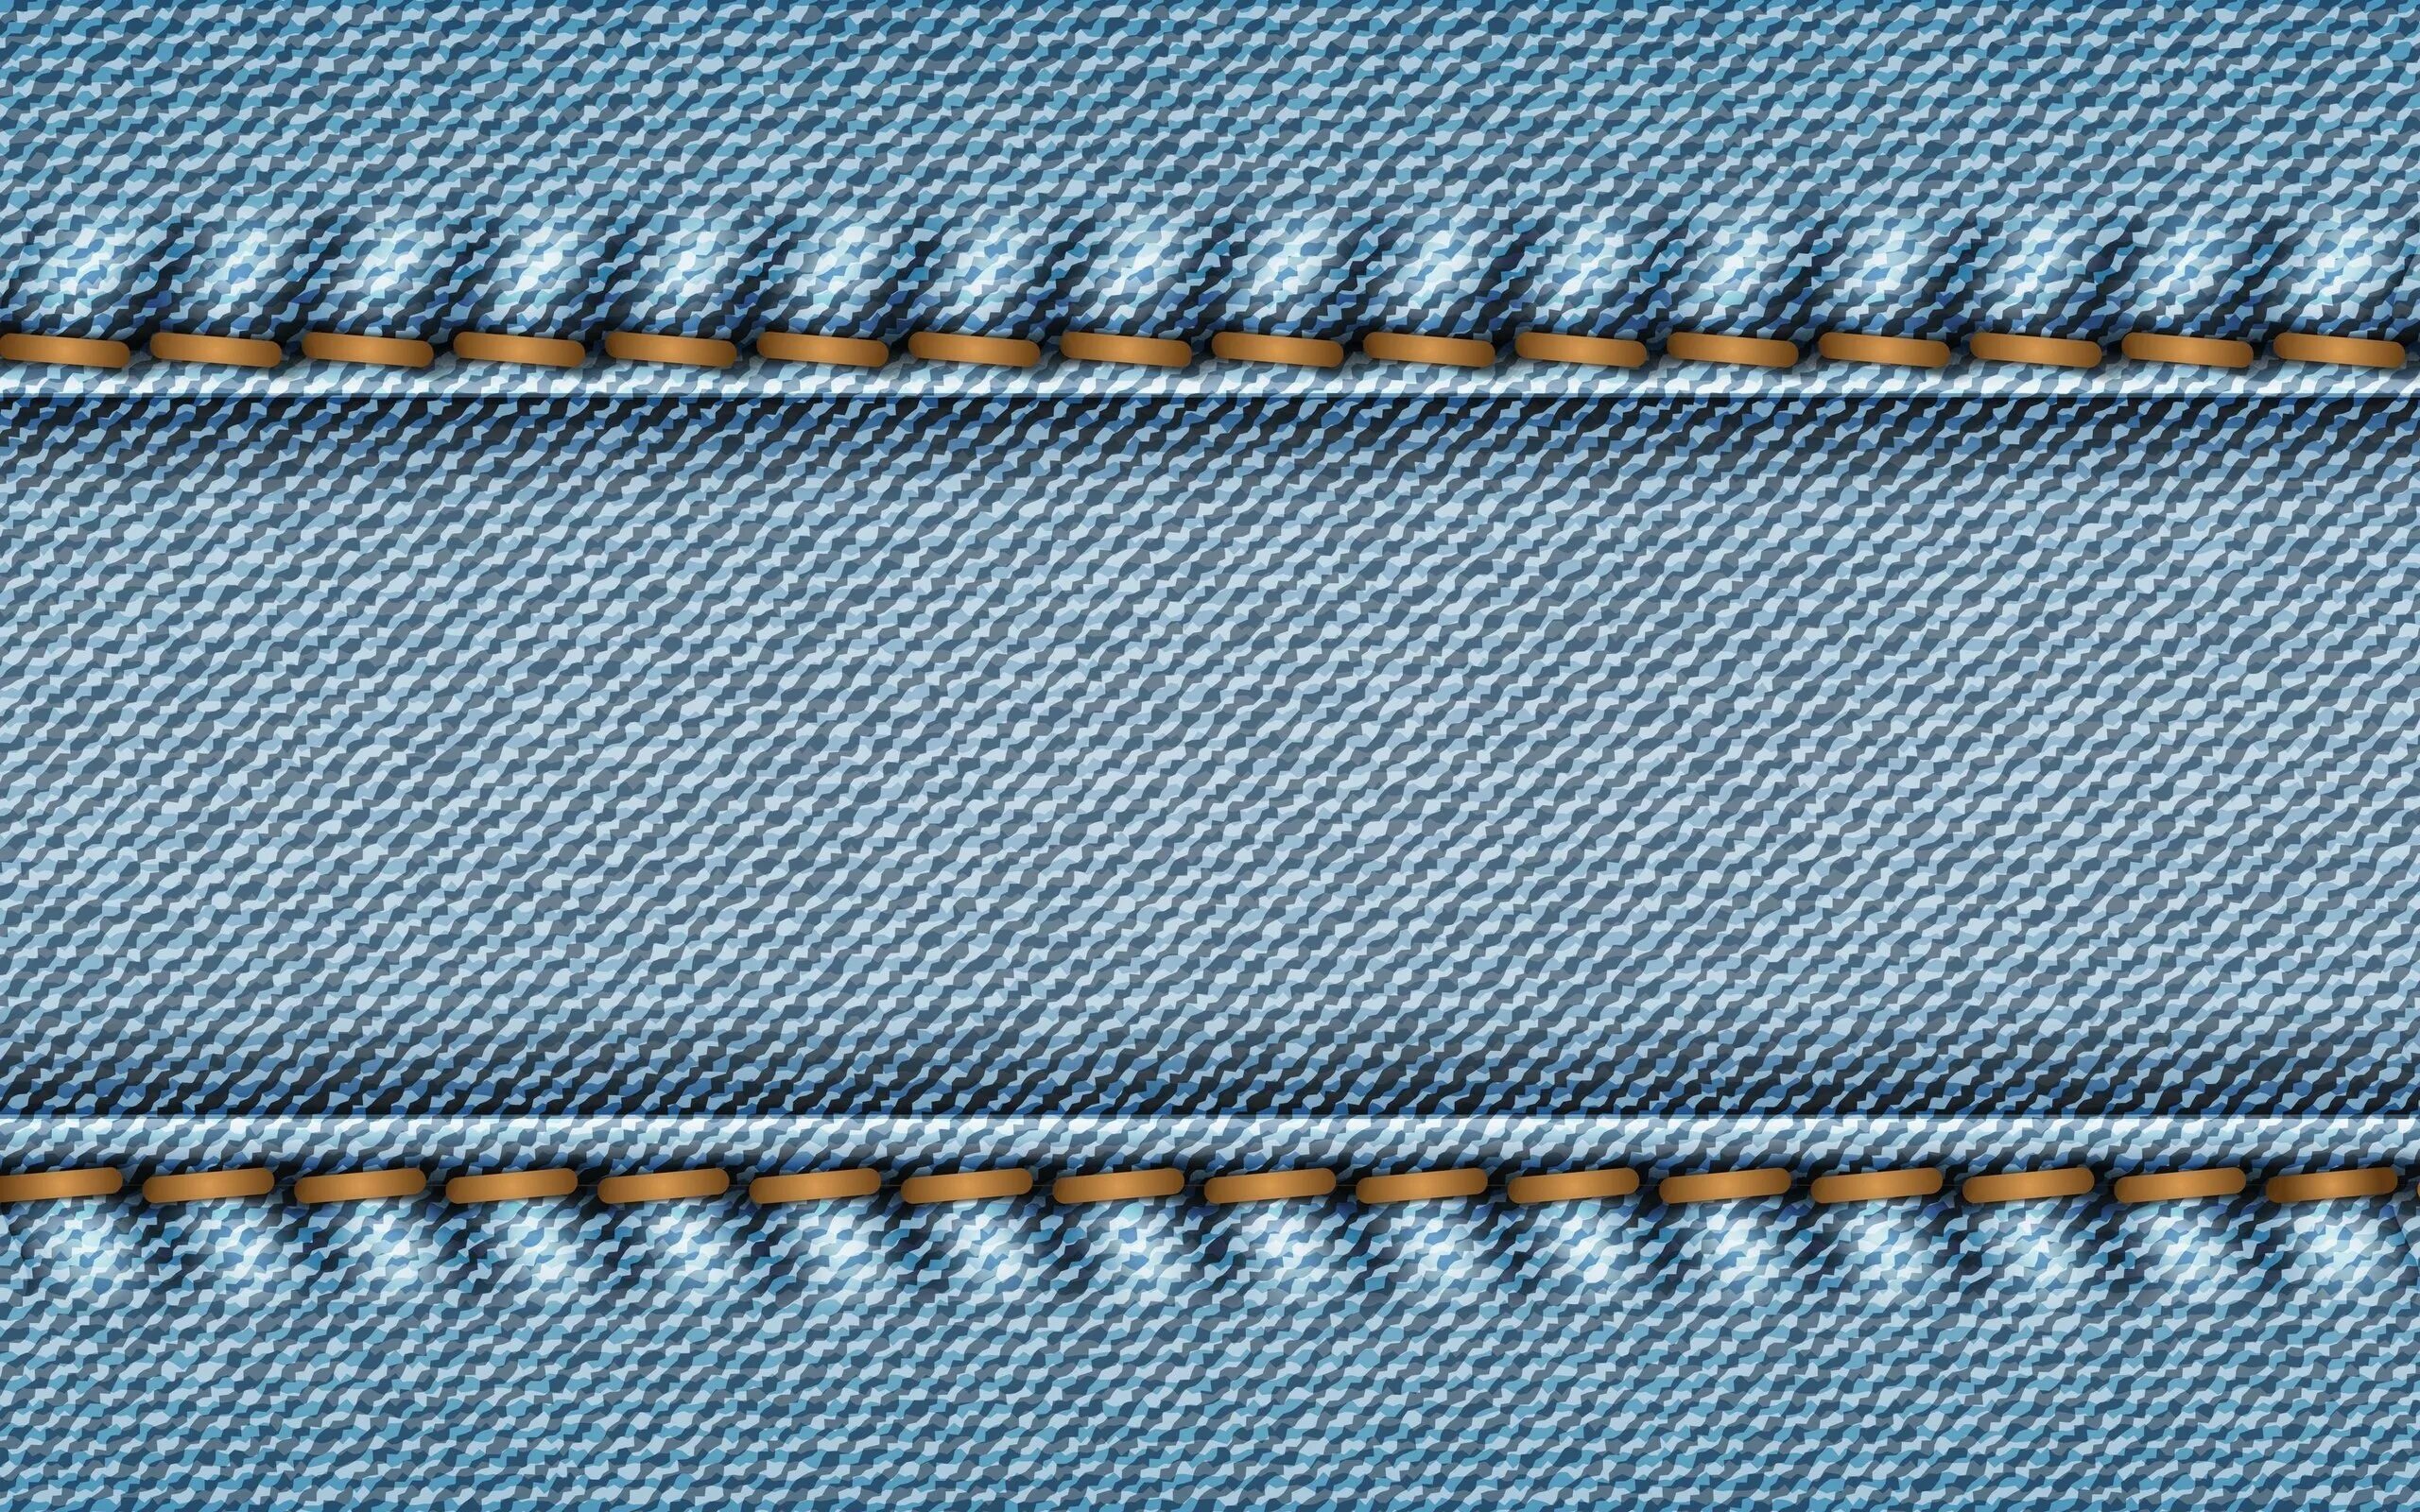 Джинсовый шов. Джинсовая ткань. Джинсовый фон. Строчка на ткани. Текстура джинсовой ткани.